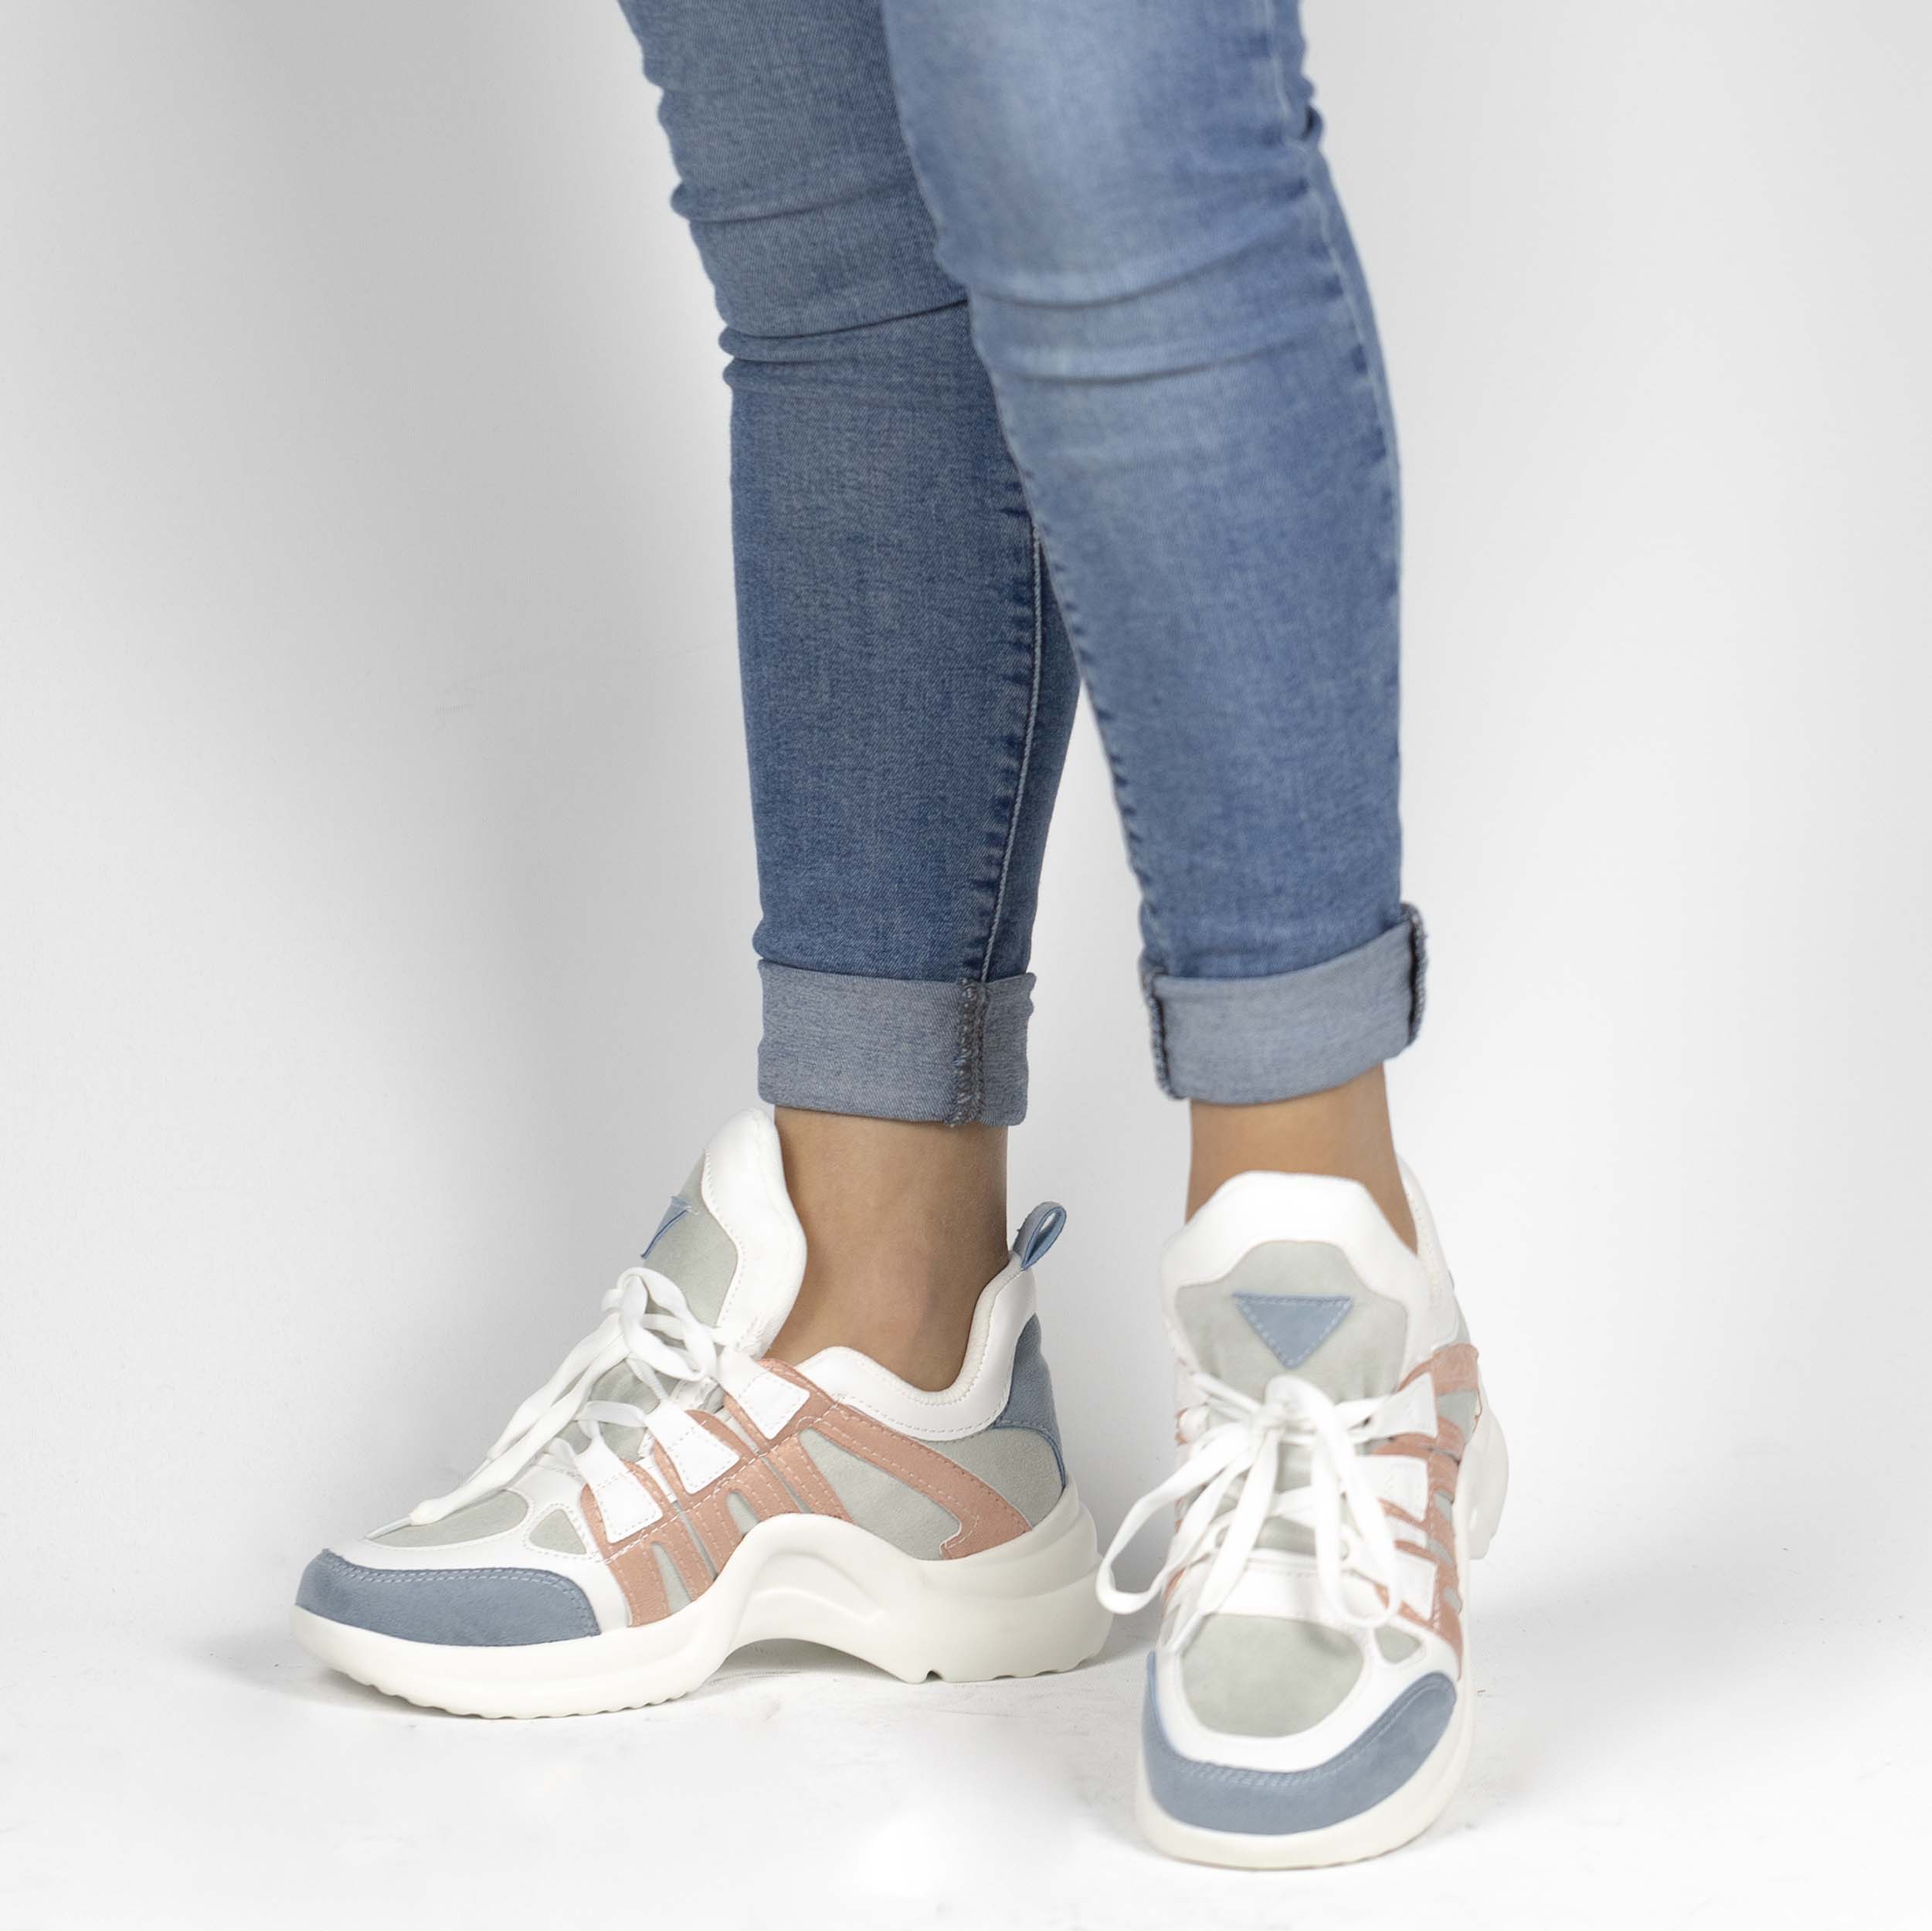 Kadın Kalın Tabanlı Spor Günlük Renkli Sneakers Ayakkabı, Renk: Beyaz - Mavi, Beden: 36